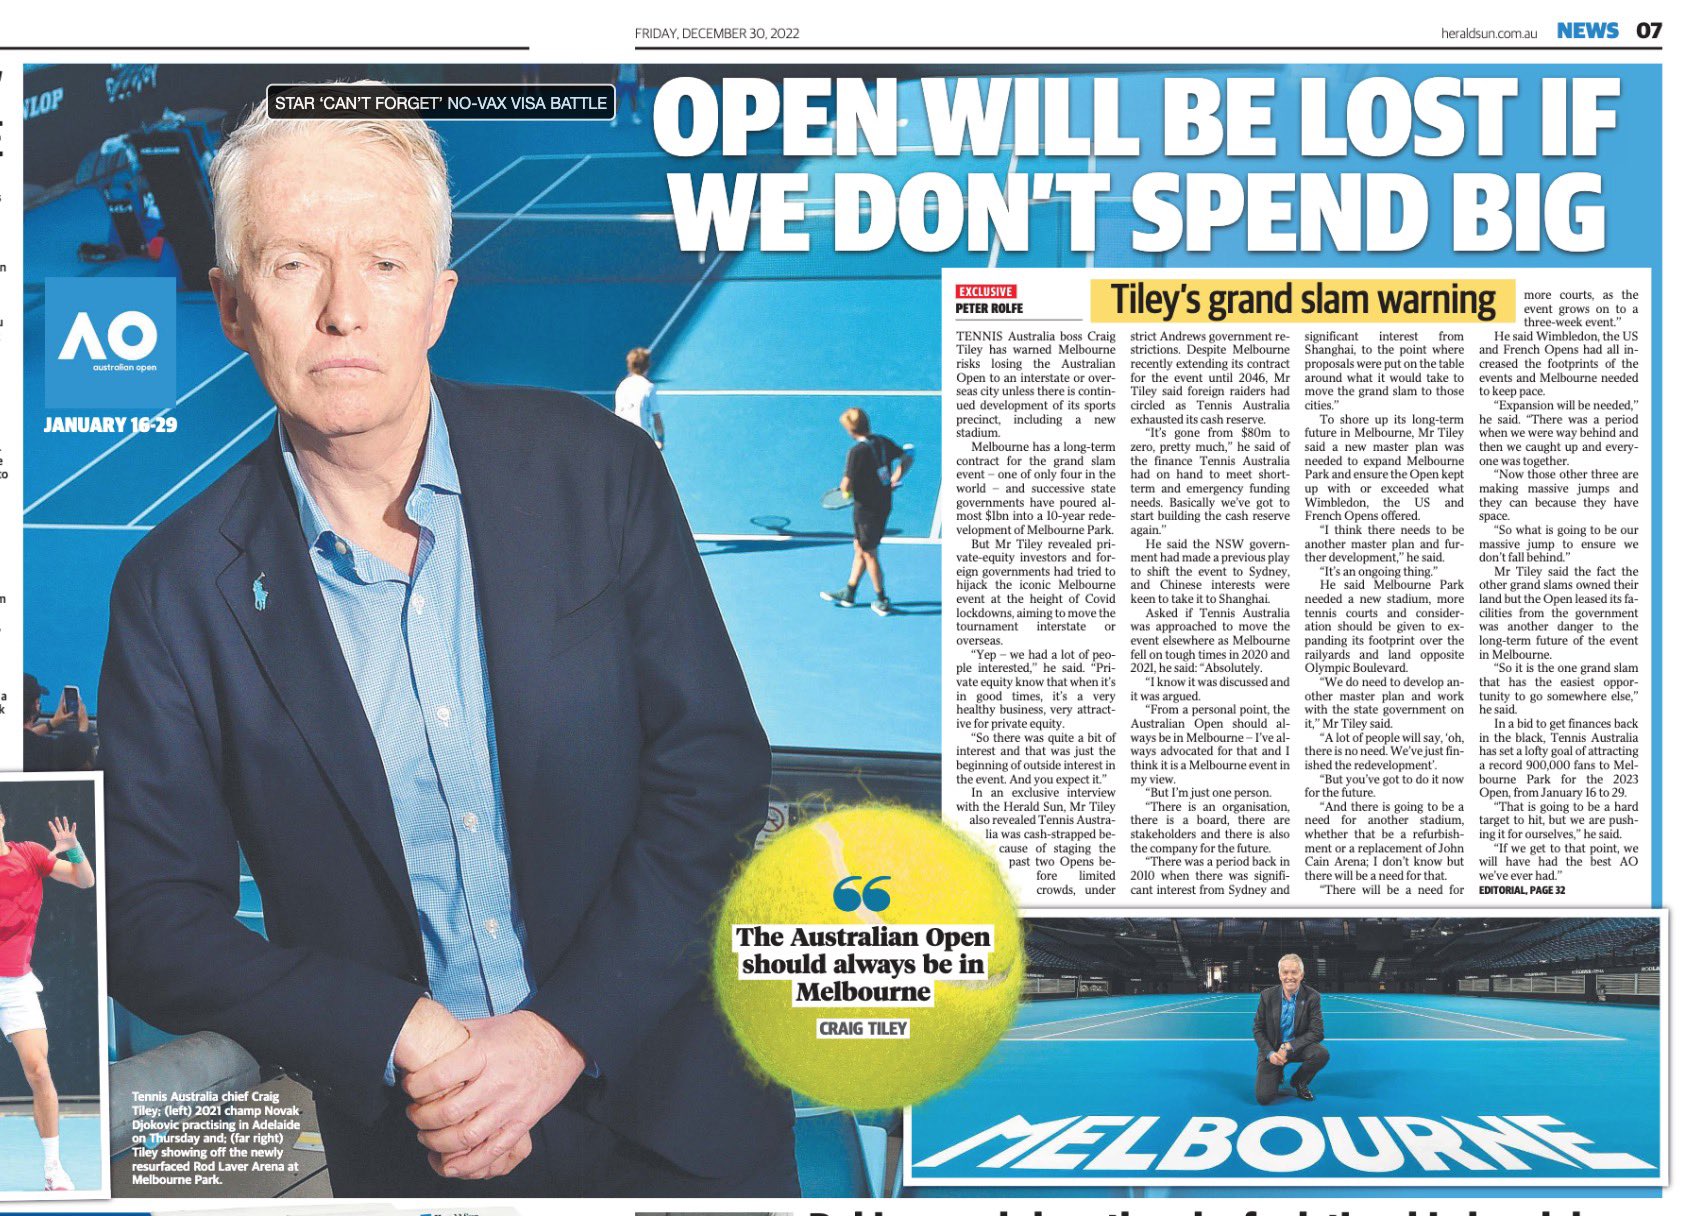 澳網要搬家？澳洲網球協會老闆泰利（Craig Tiley）四處放話警告墨爾本。摘自推特